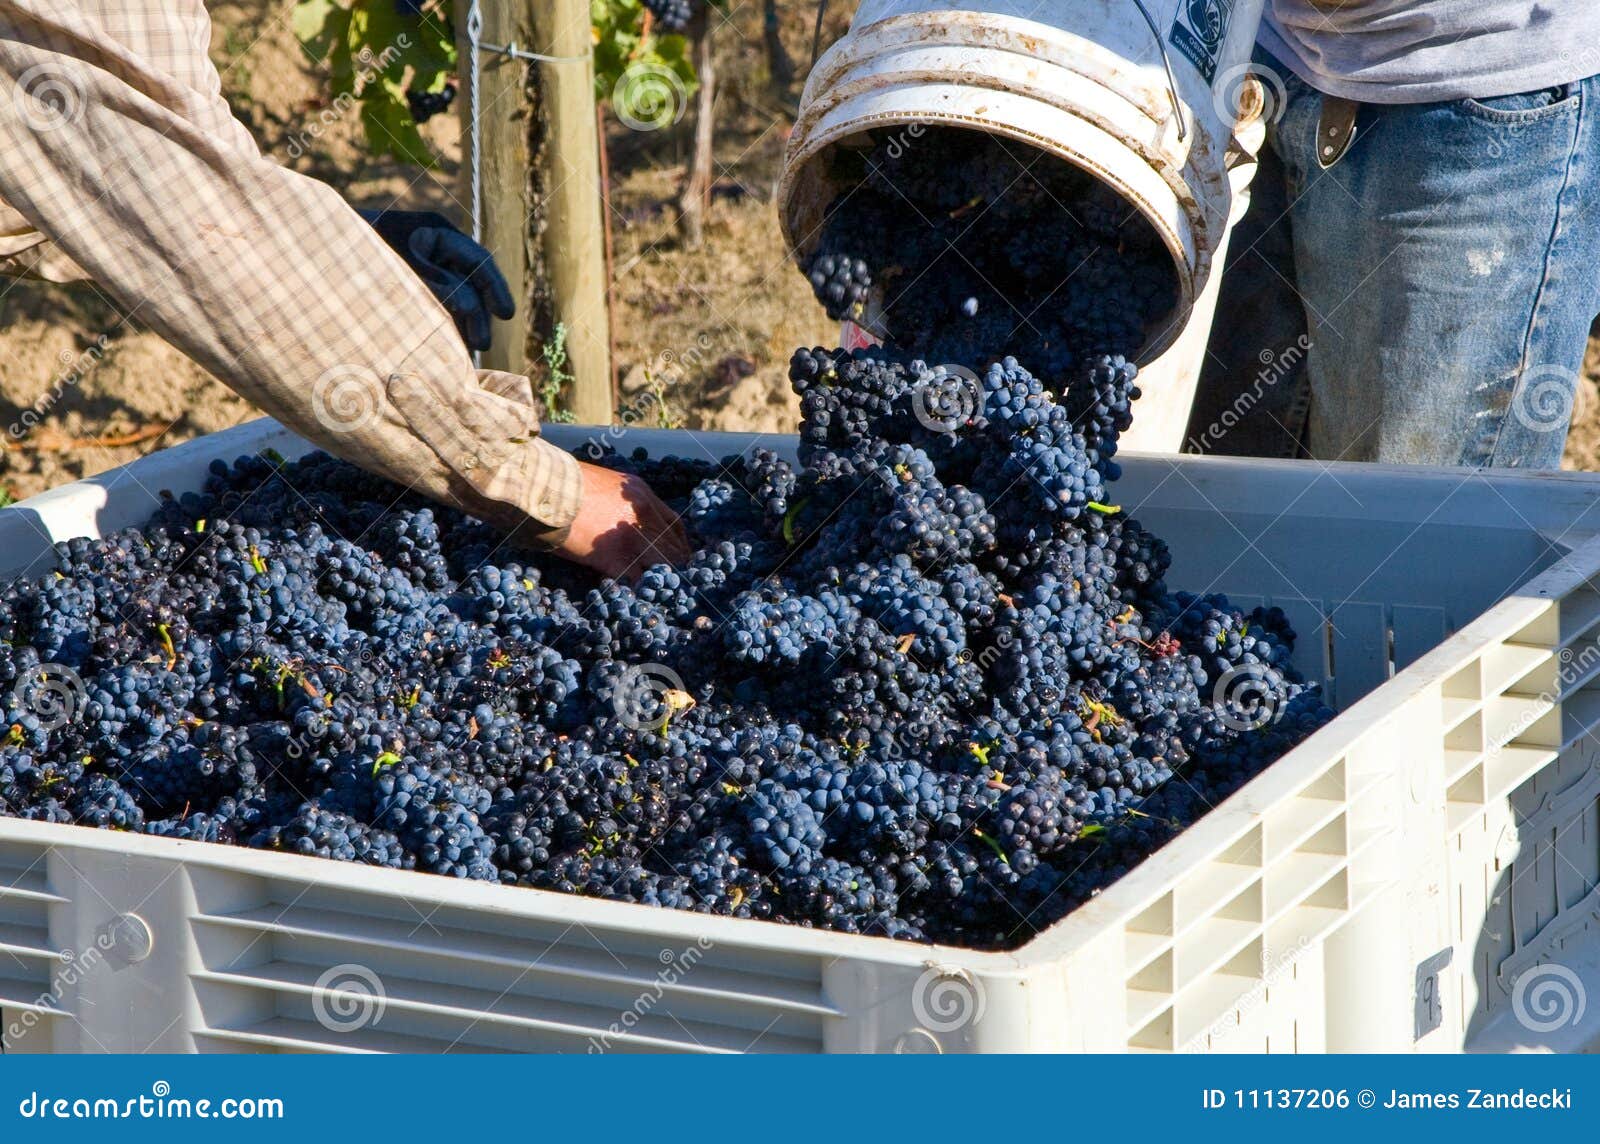 pinot noir grape harvest